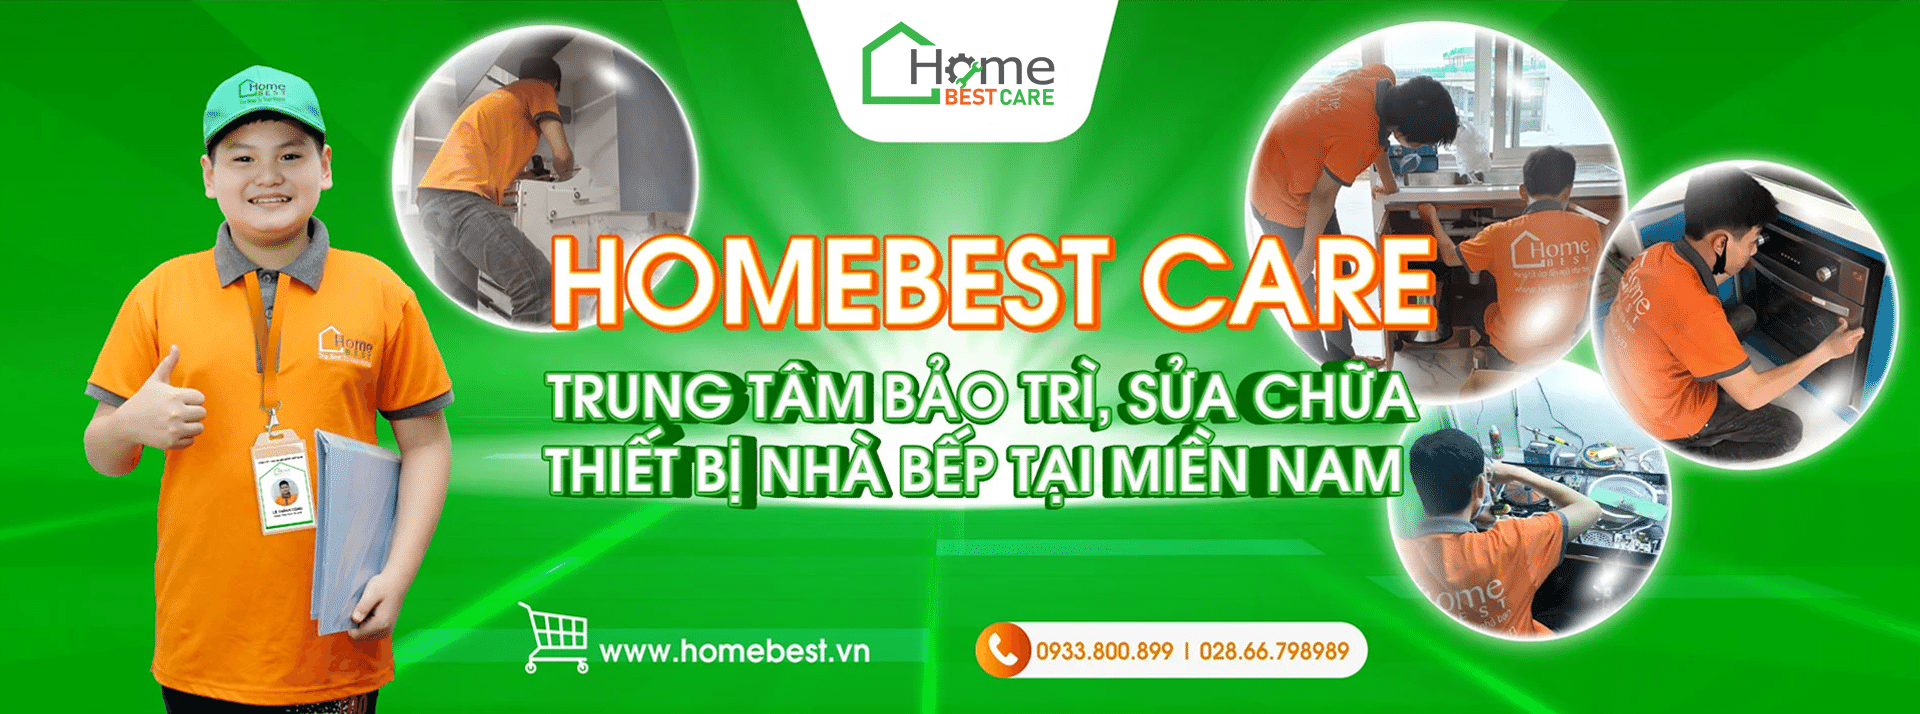 Home Best Care - Trung tâm bảo trì, sửa chữa thiết bị nhà bếp cao cấp